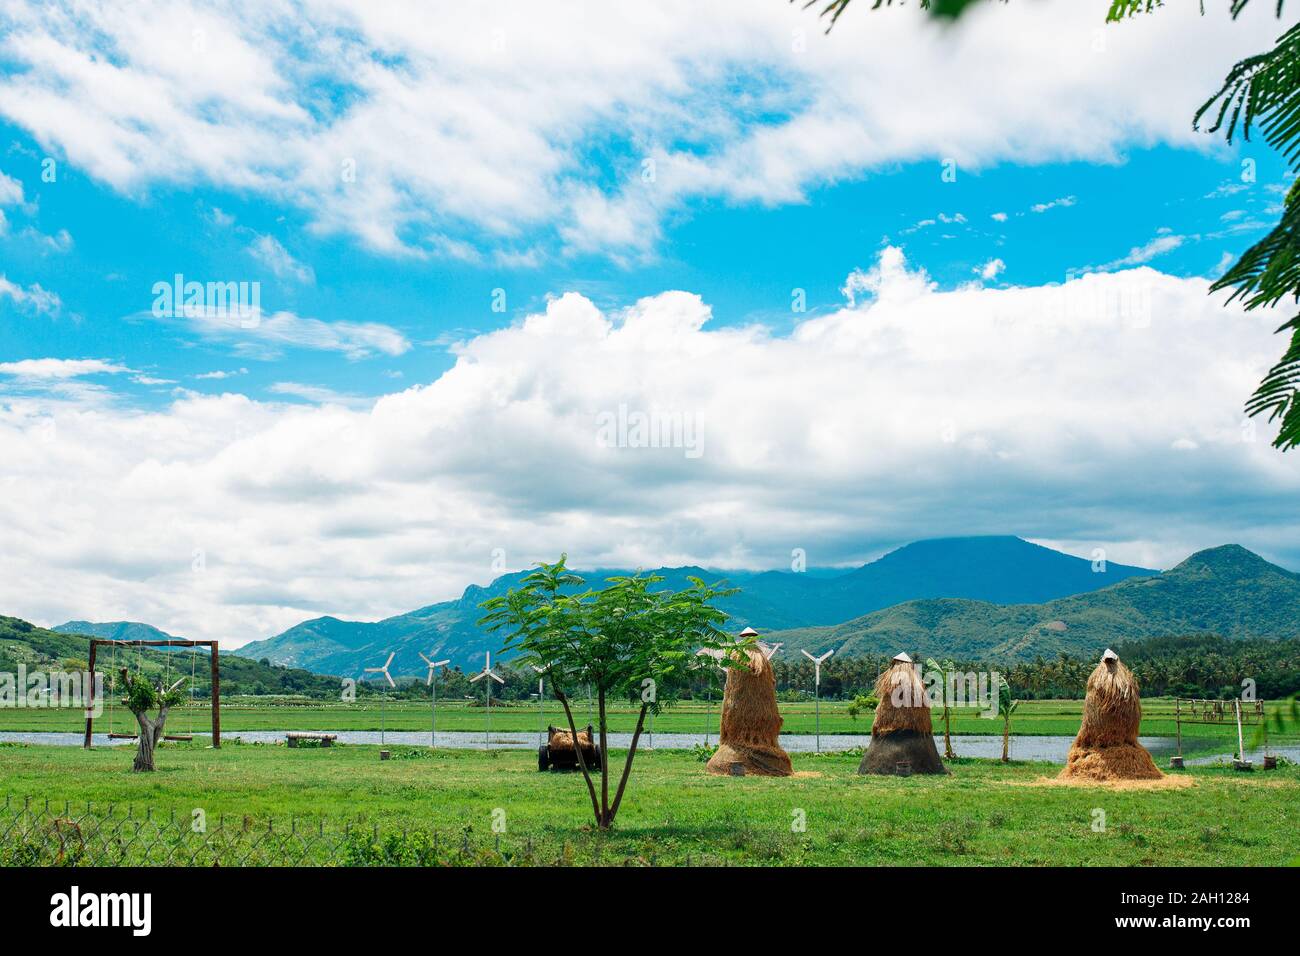 Ländliche Landschaft, Blick auf Reisfelder, schöne Aussicht auf Berge, Flüsse und einen Bauernhof Dorf. Blauer Himmel mit weißen Wolken. Wunderbare asiatische Landschaft Stockfoto